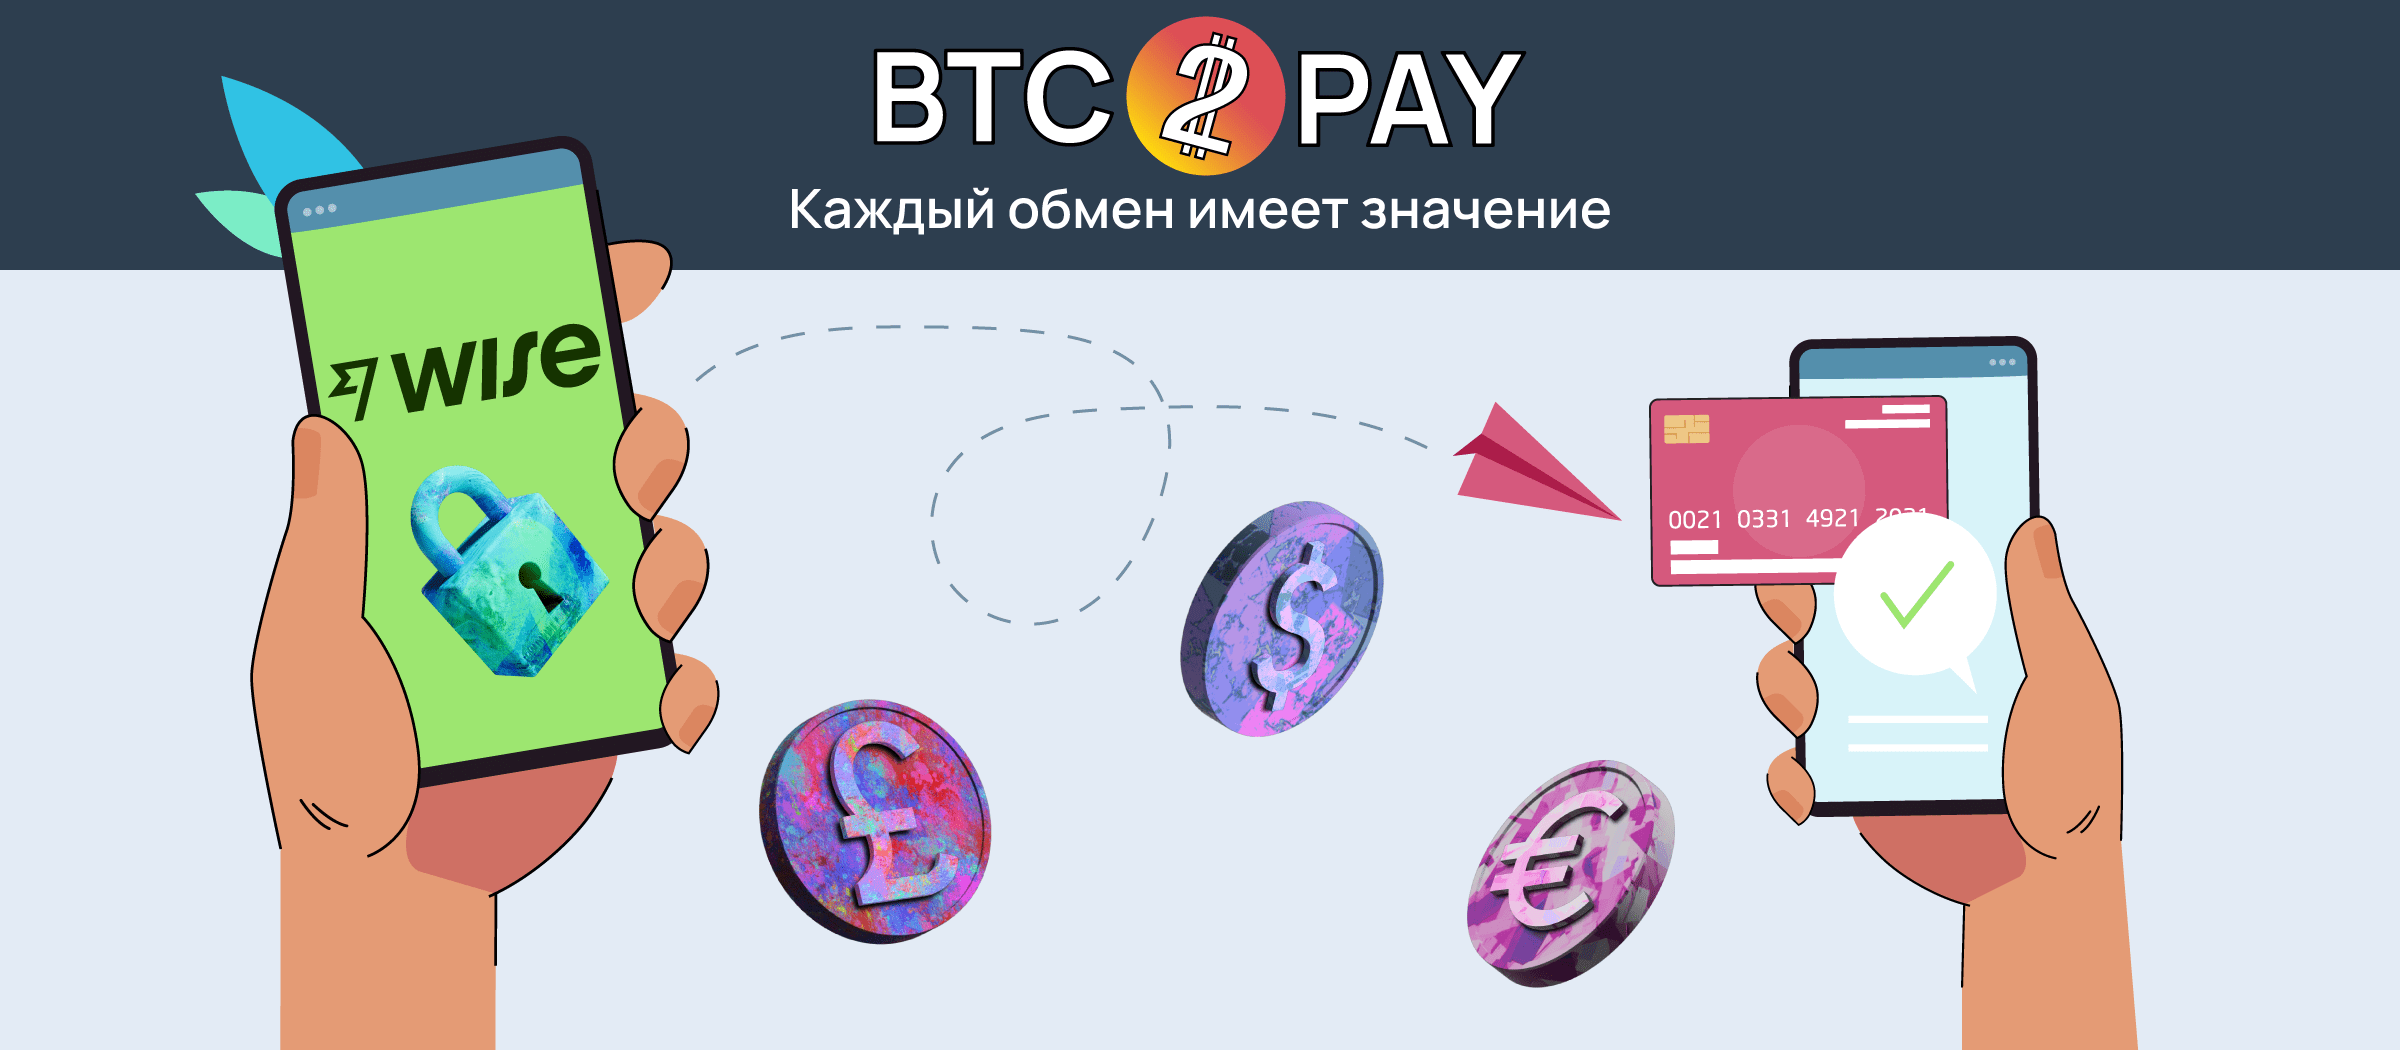 Телеграмм бот по обмену игровой валюты на донат Black Russia. Pay accept